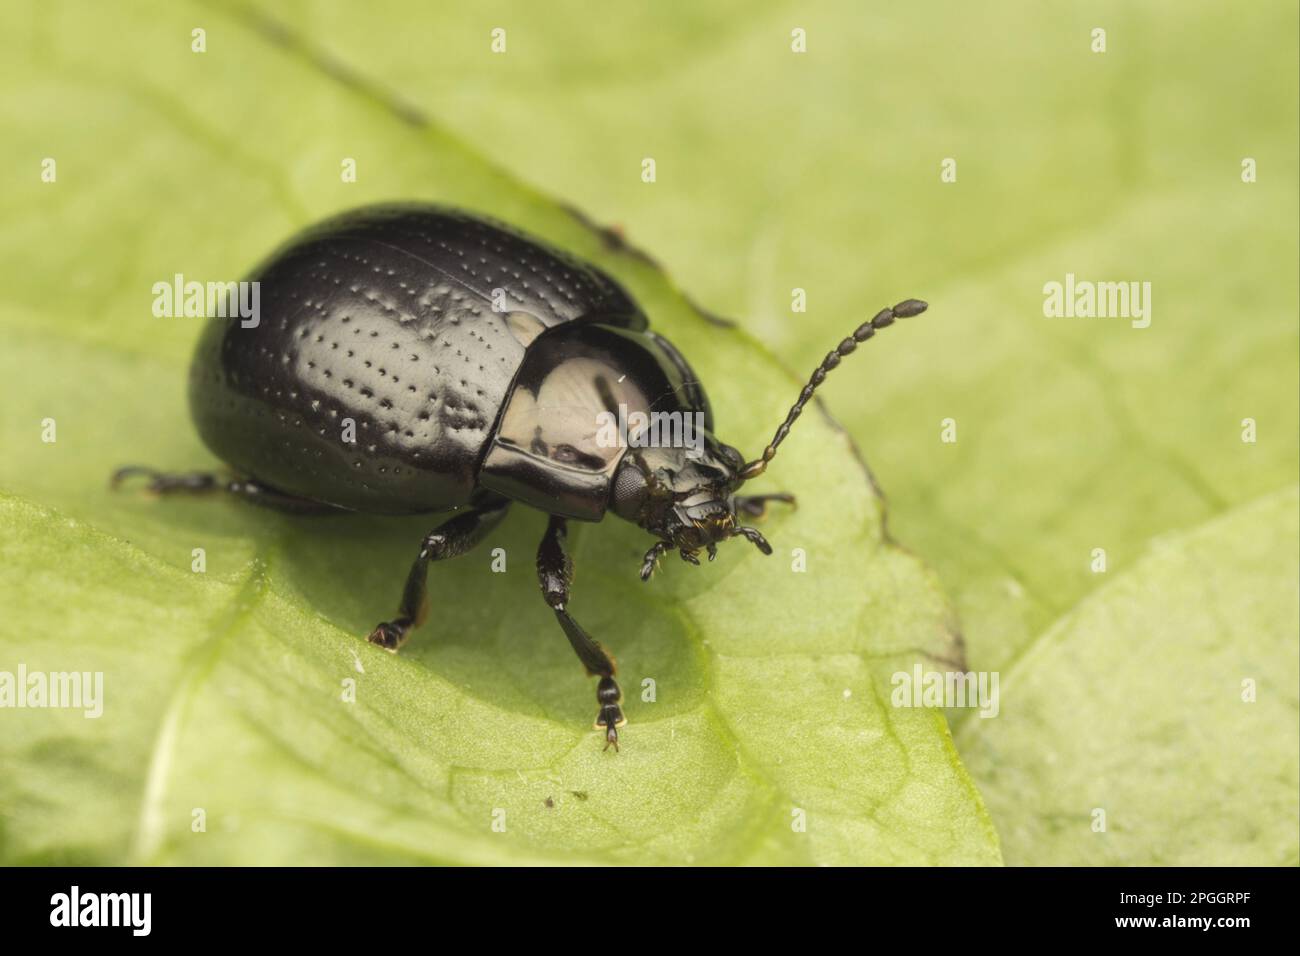 Beetle à large épaulement (Chrysolina oricalcia) adulte, reposant sur la feuille, Leicestershire, Angleterre, Royaume-Uni Banque D'Images